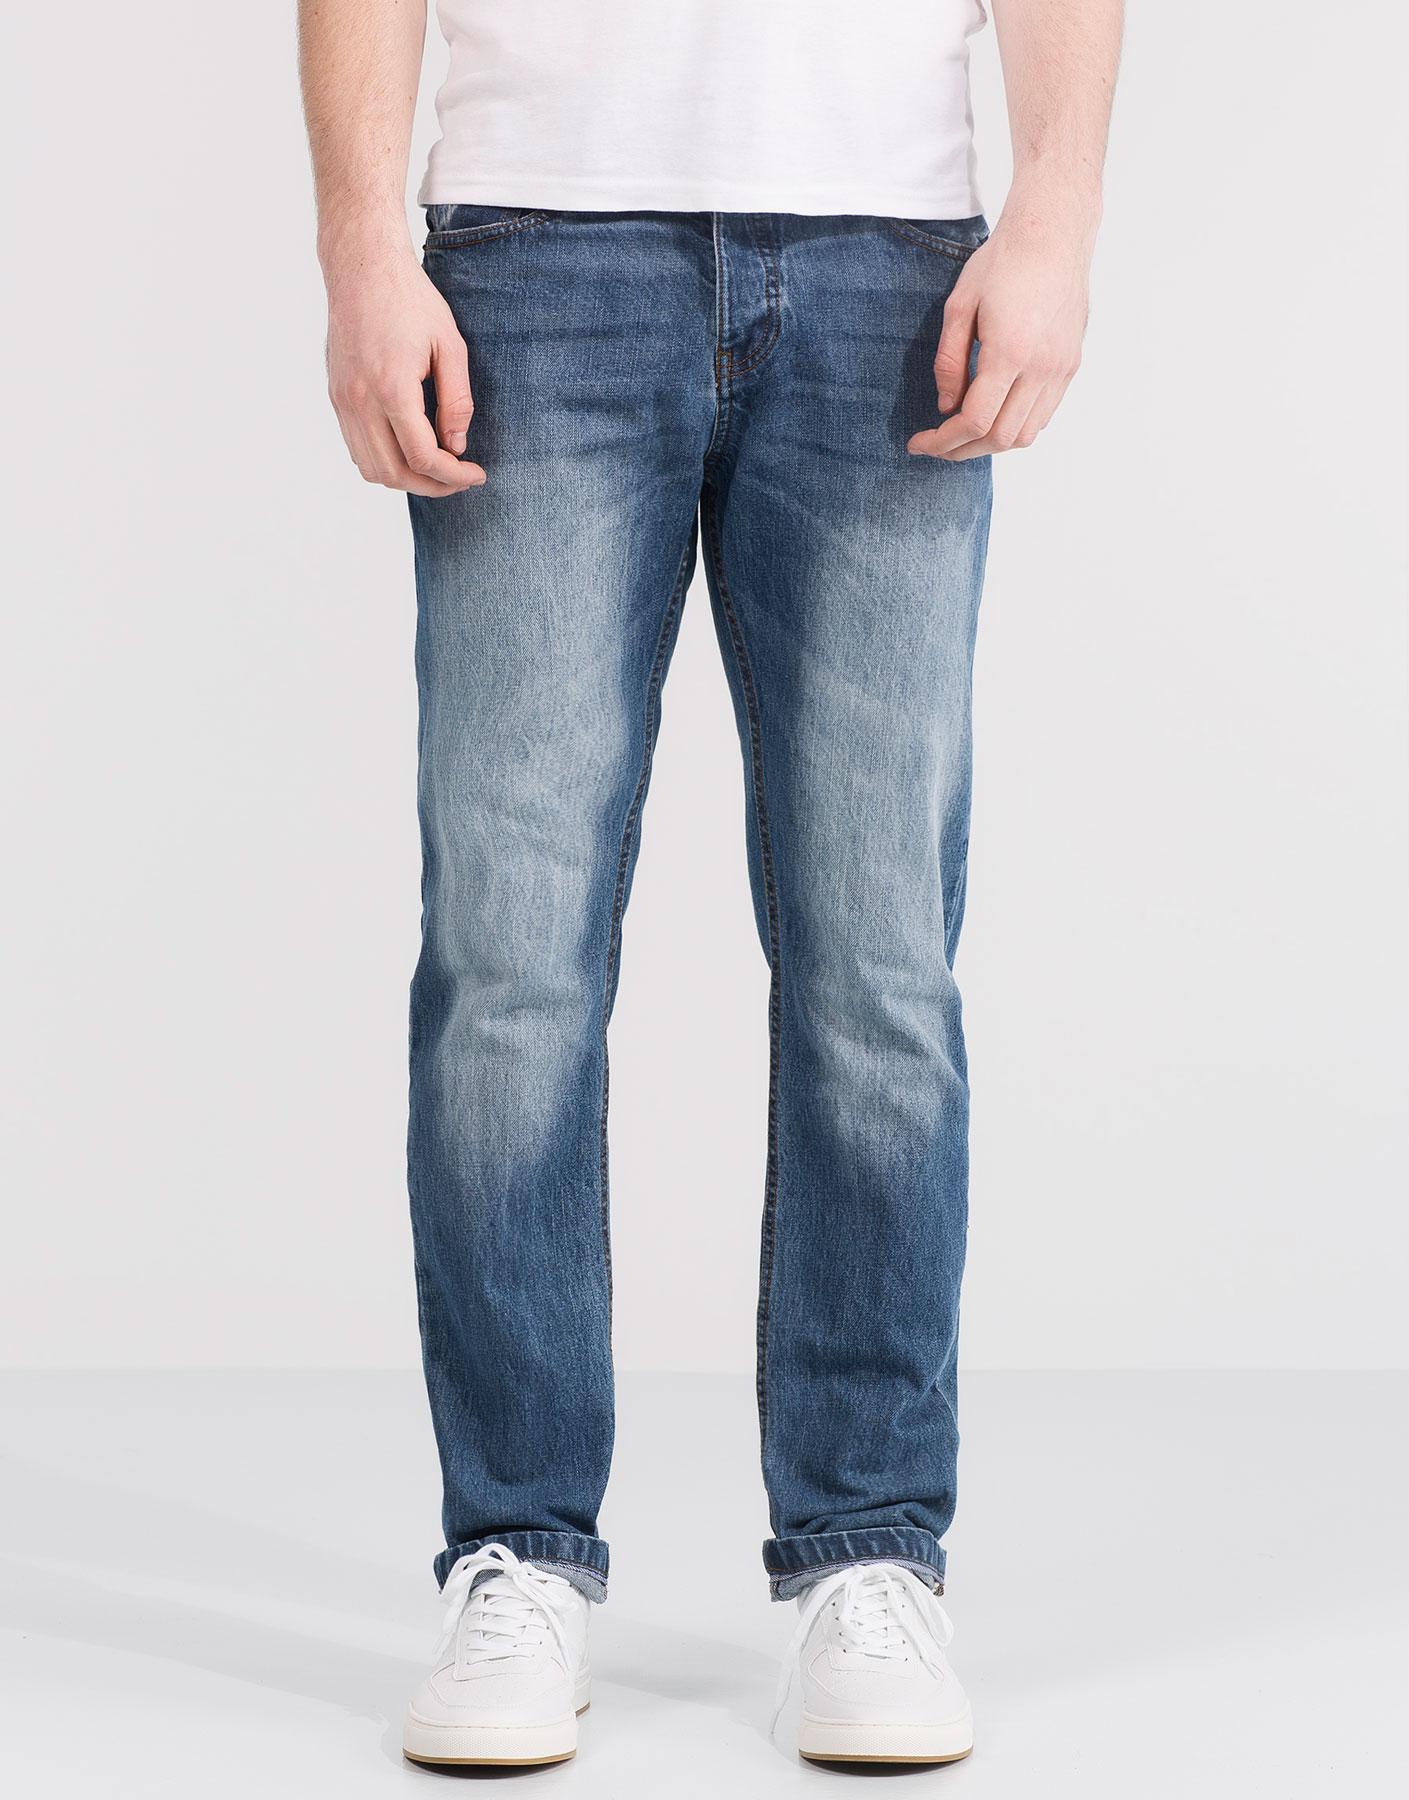 Quần jeans nam ống rộng mang hơi hướng cổ điển